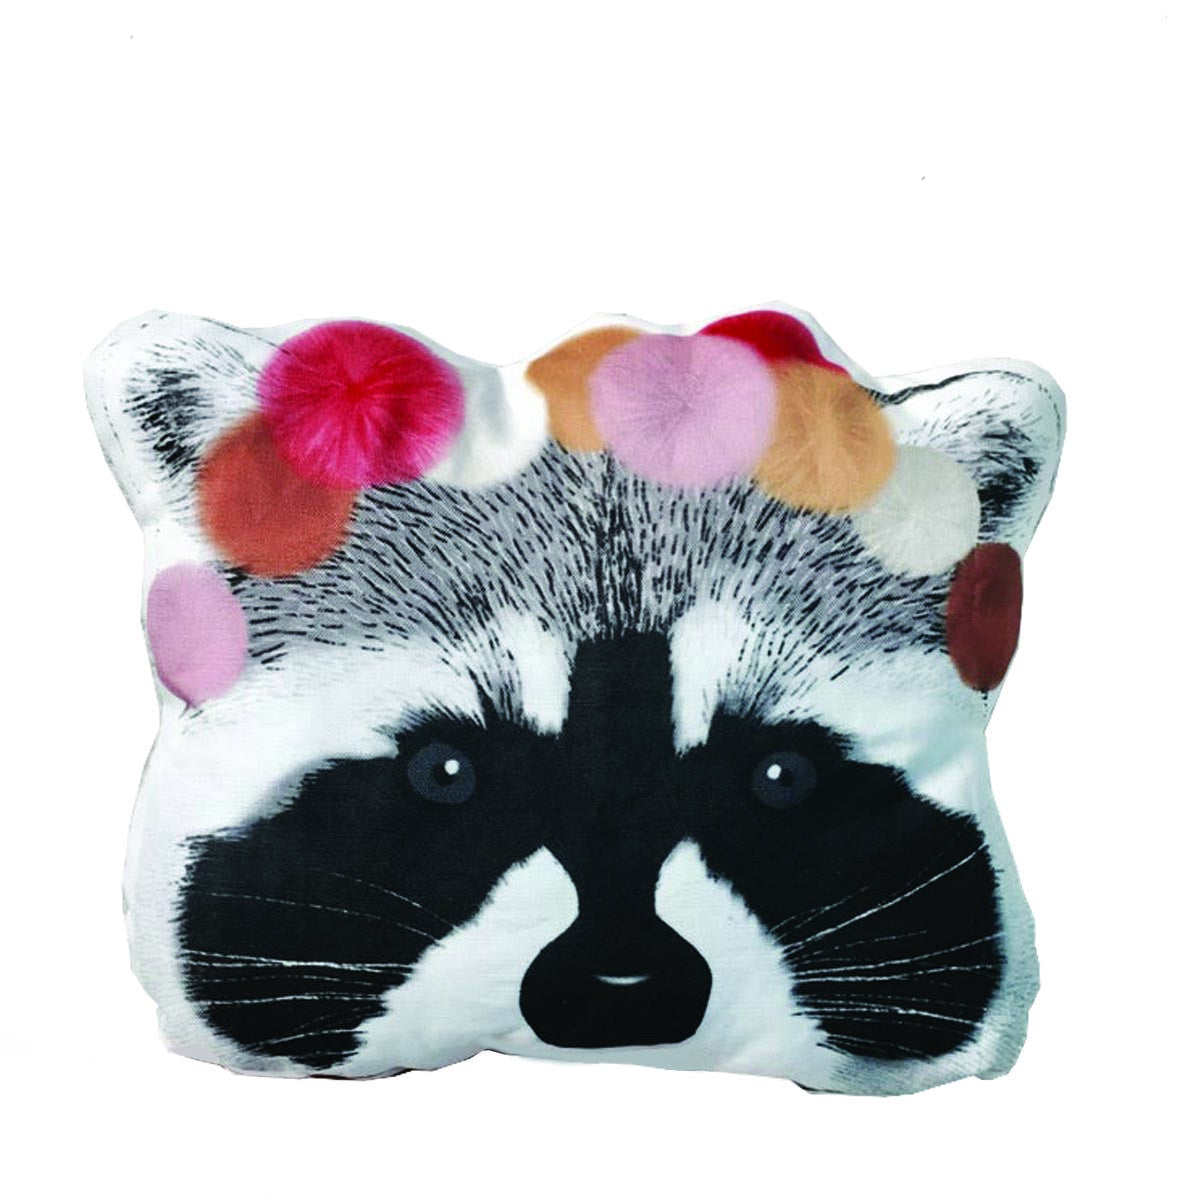 Deer Industries Cushions and Pillow, Raccoon Cushion, Kids Cushion, Decorative Cushion, Minimel Cushions, Home Decor Accessories